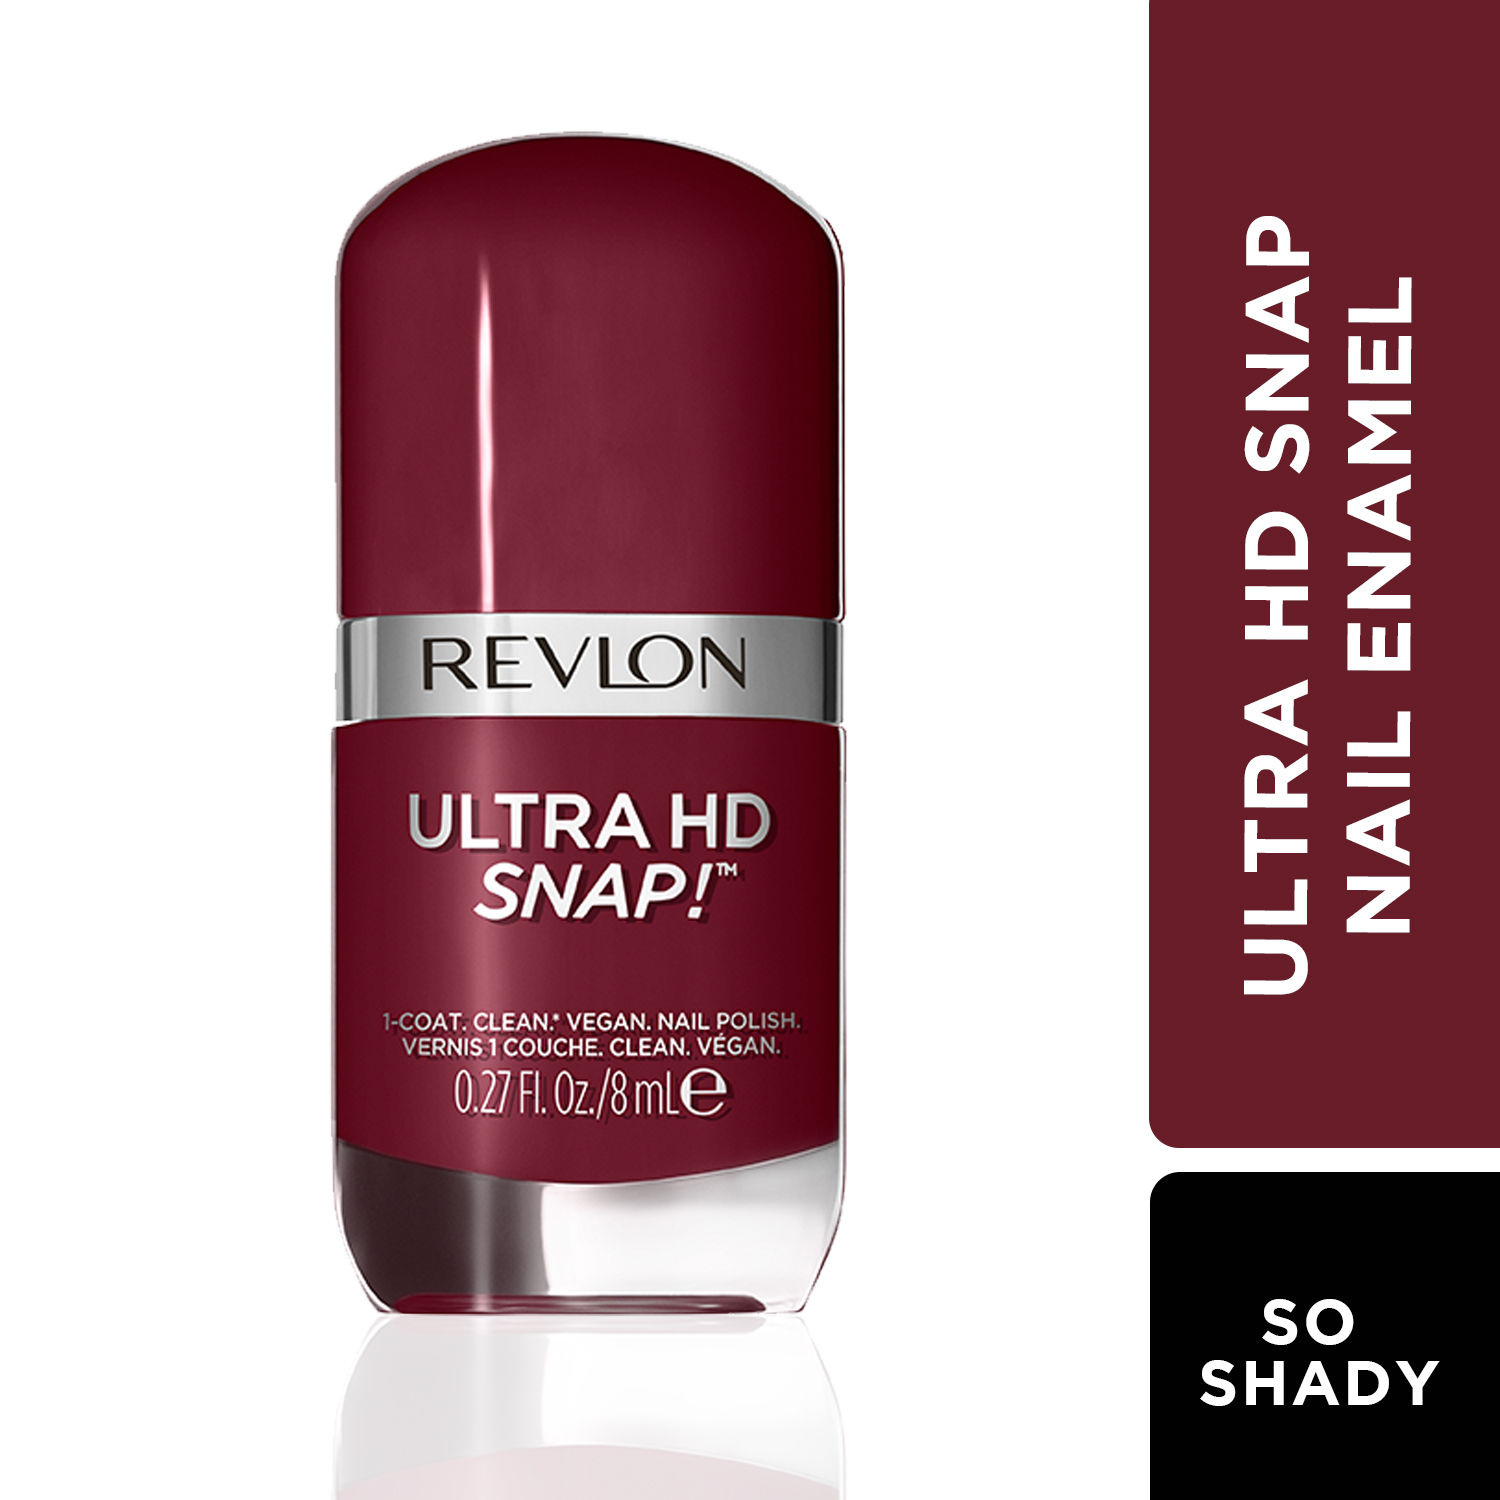 Buy Revlon Ultra HD Snap Nail Polish - shade - So Shady - Purplle